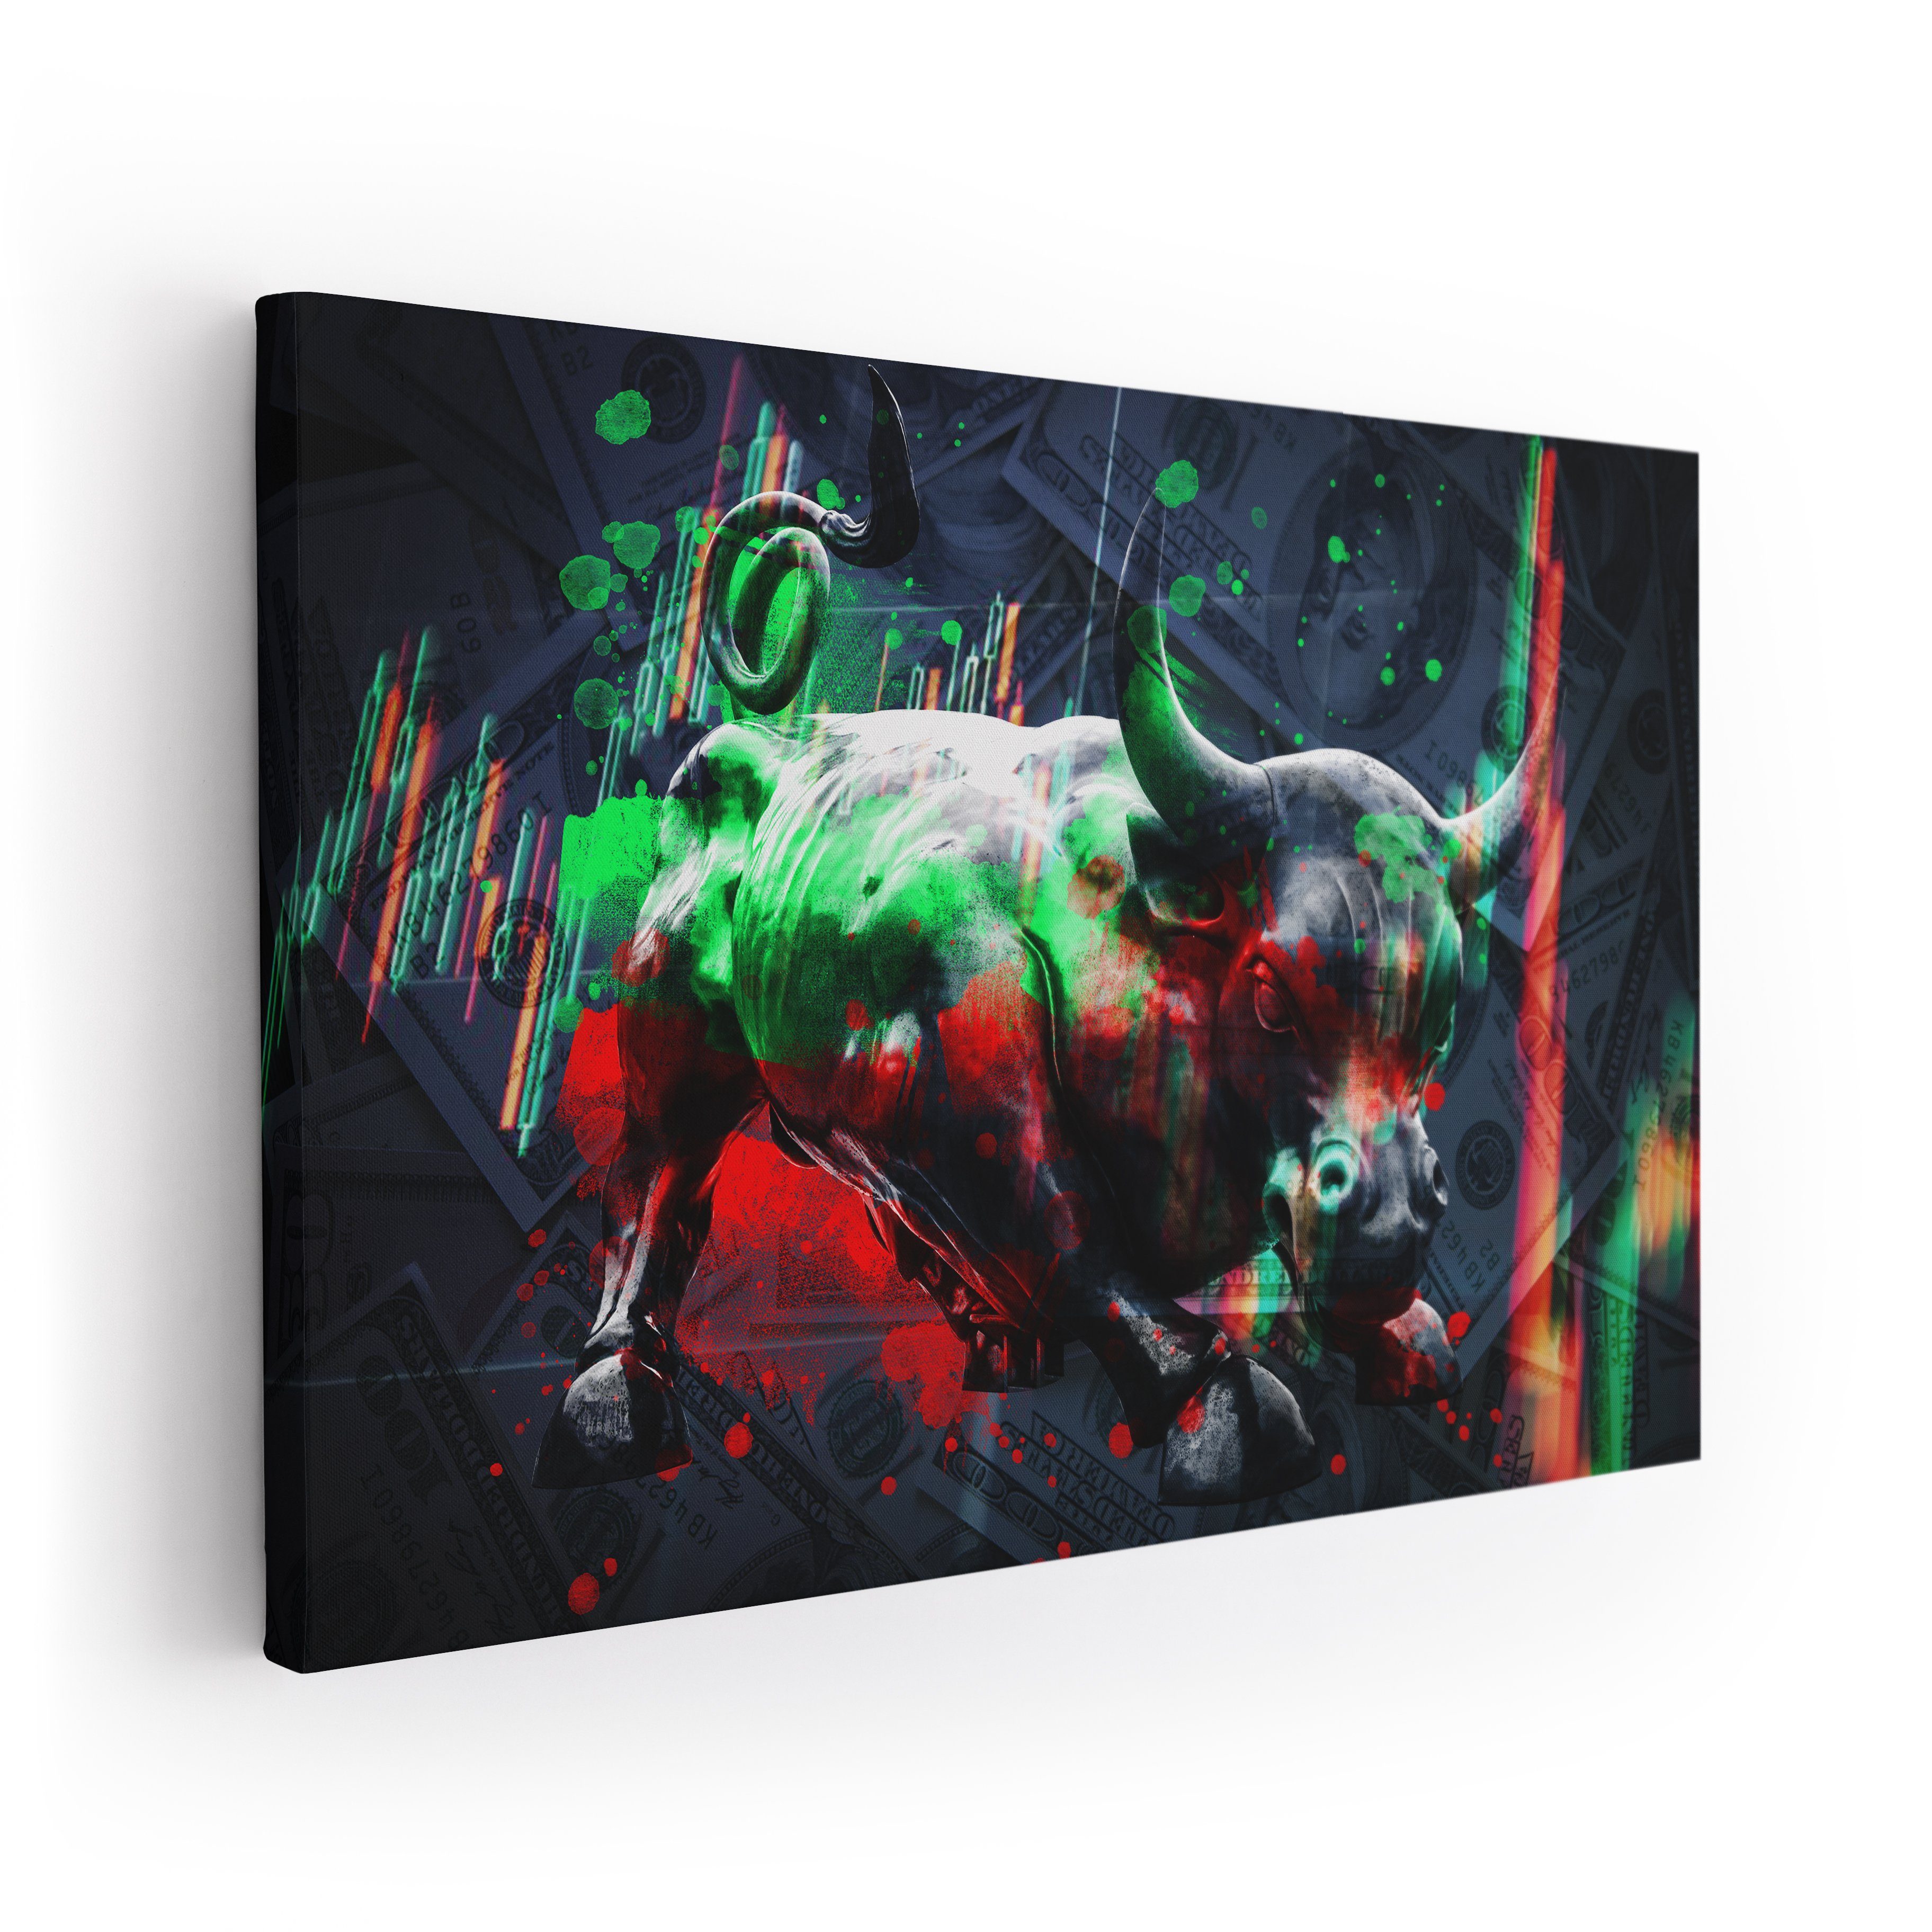 ArtMind XXL-Wandbild The Bull - Börse, Premium Wandbilder als Poster & gerahmte Leinwand in 4 Größen, Wall Art, Bild, moderne Kunst